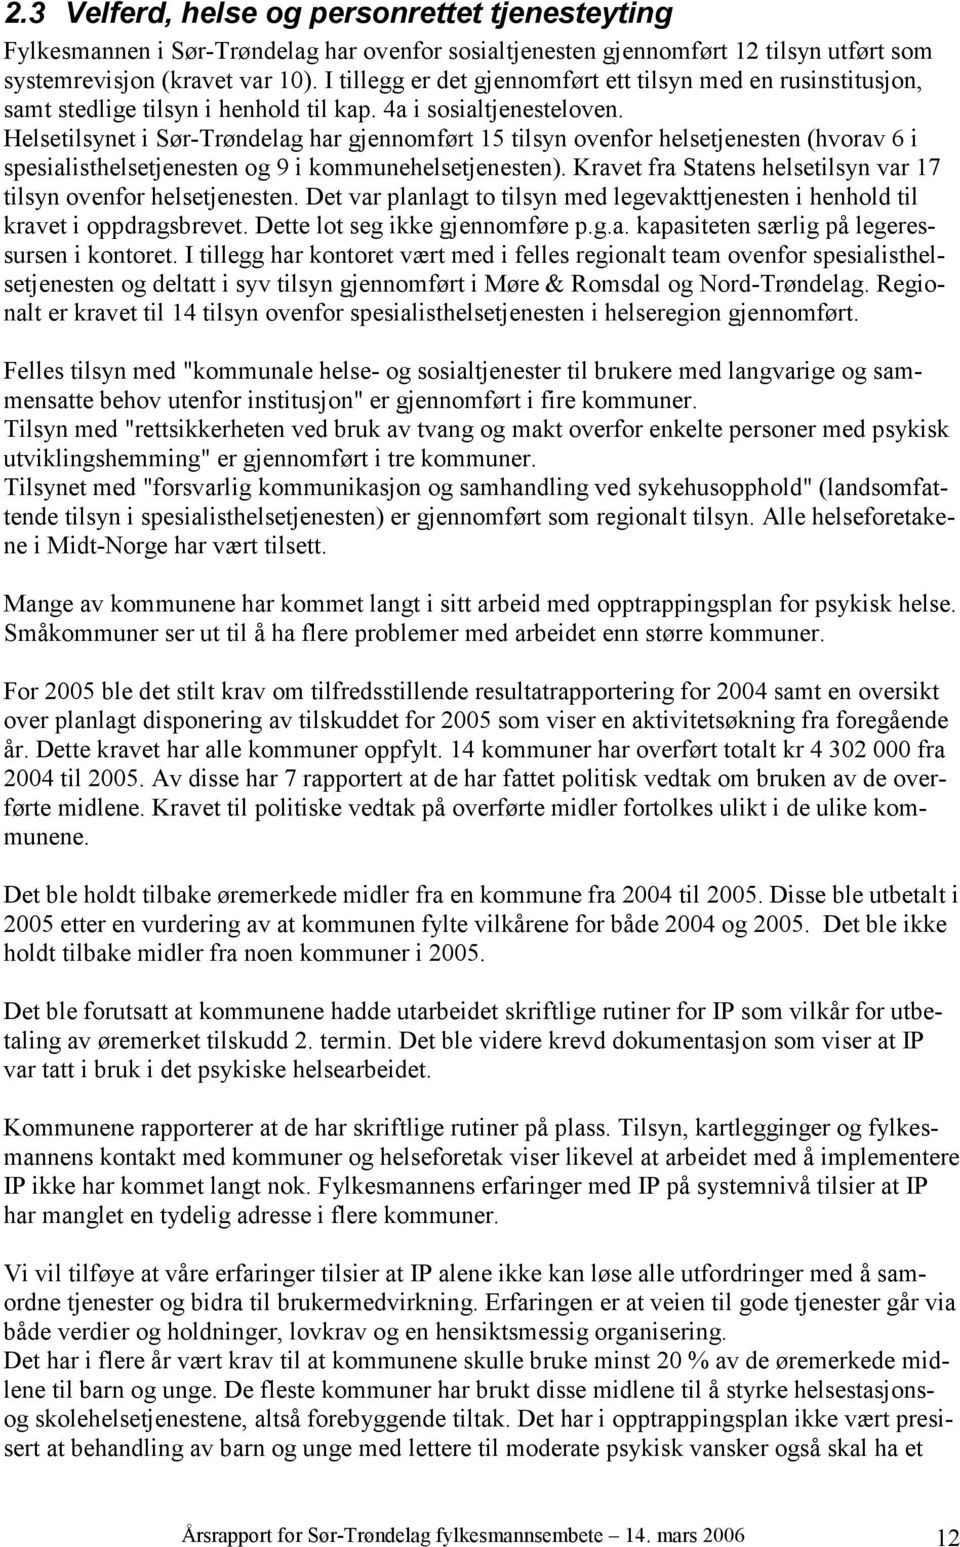 Helsetilsynet i Sør-Trøndelag har gjennomført 15 tilsyn ovenfor helsetjenesten (hvorav 6 i spesialisthelsetjenesten og 9 i kommunehelsetjenesten).